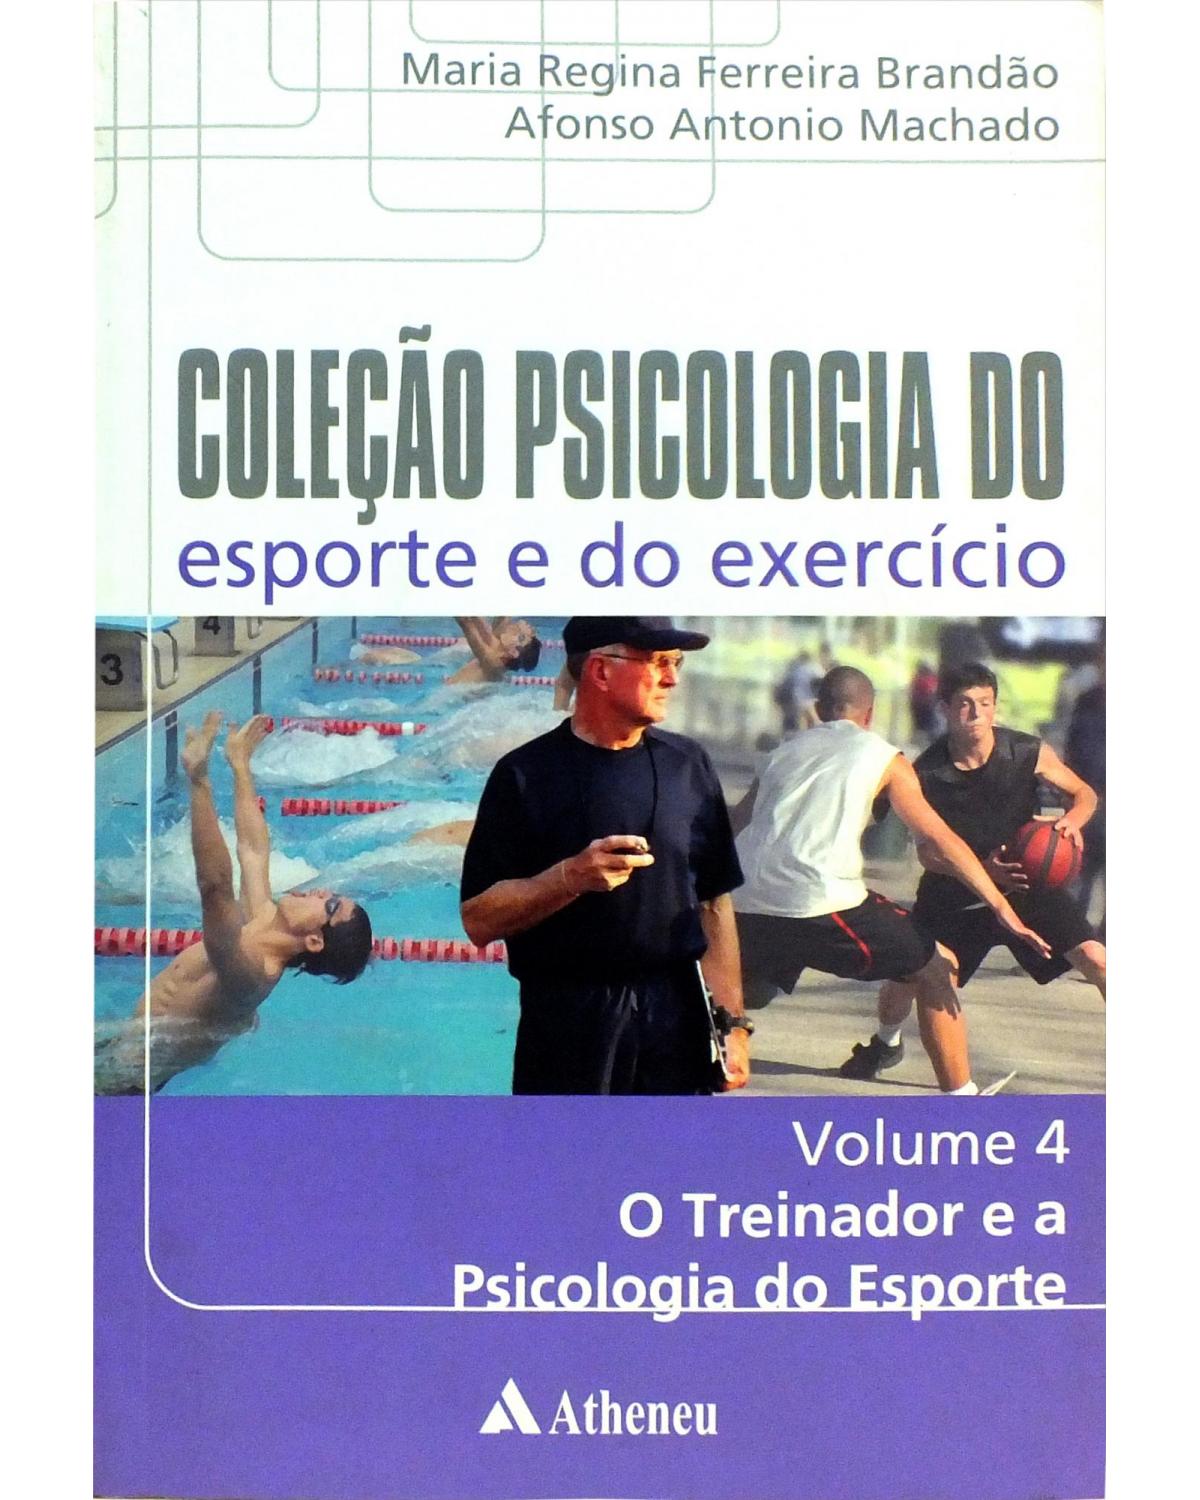 Coleção psicologia do esporte e do exercício - Volume 4: o treinador e a psicologia do esporte - 1ª Edição | 2009